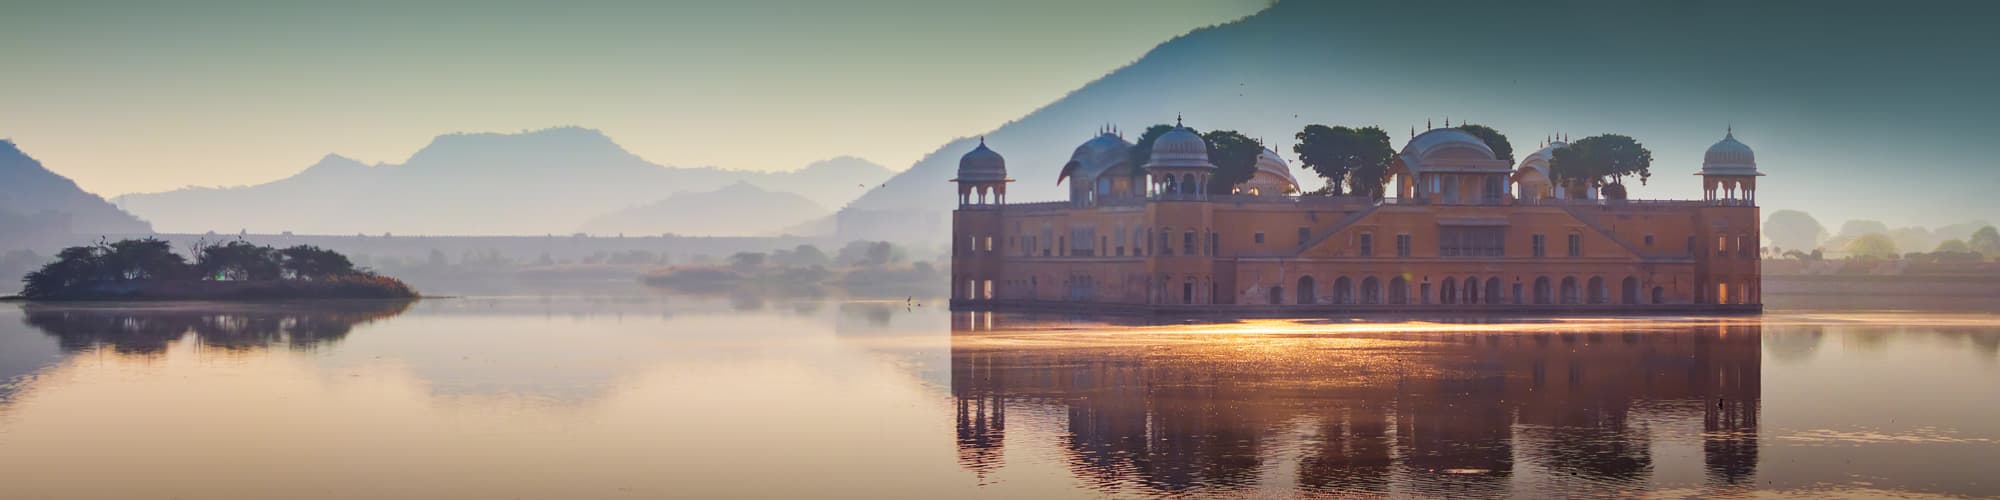 Voyage en famille Rajasthan © honzahruby / Adobe Stock